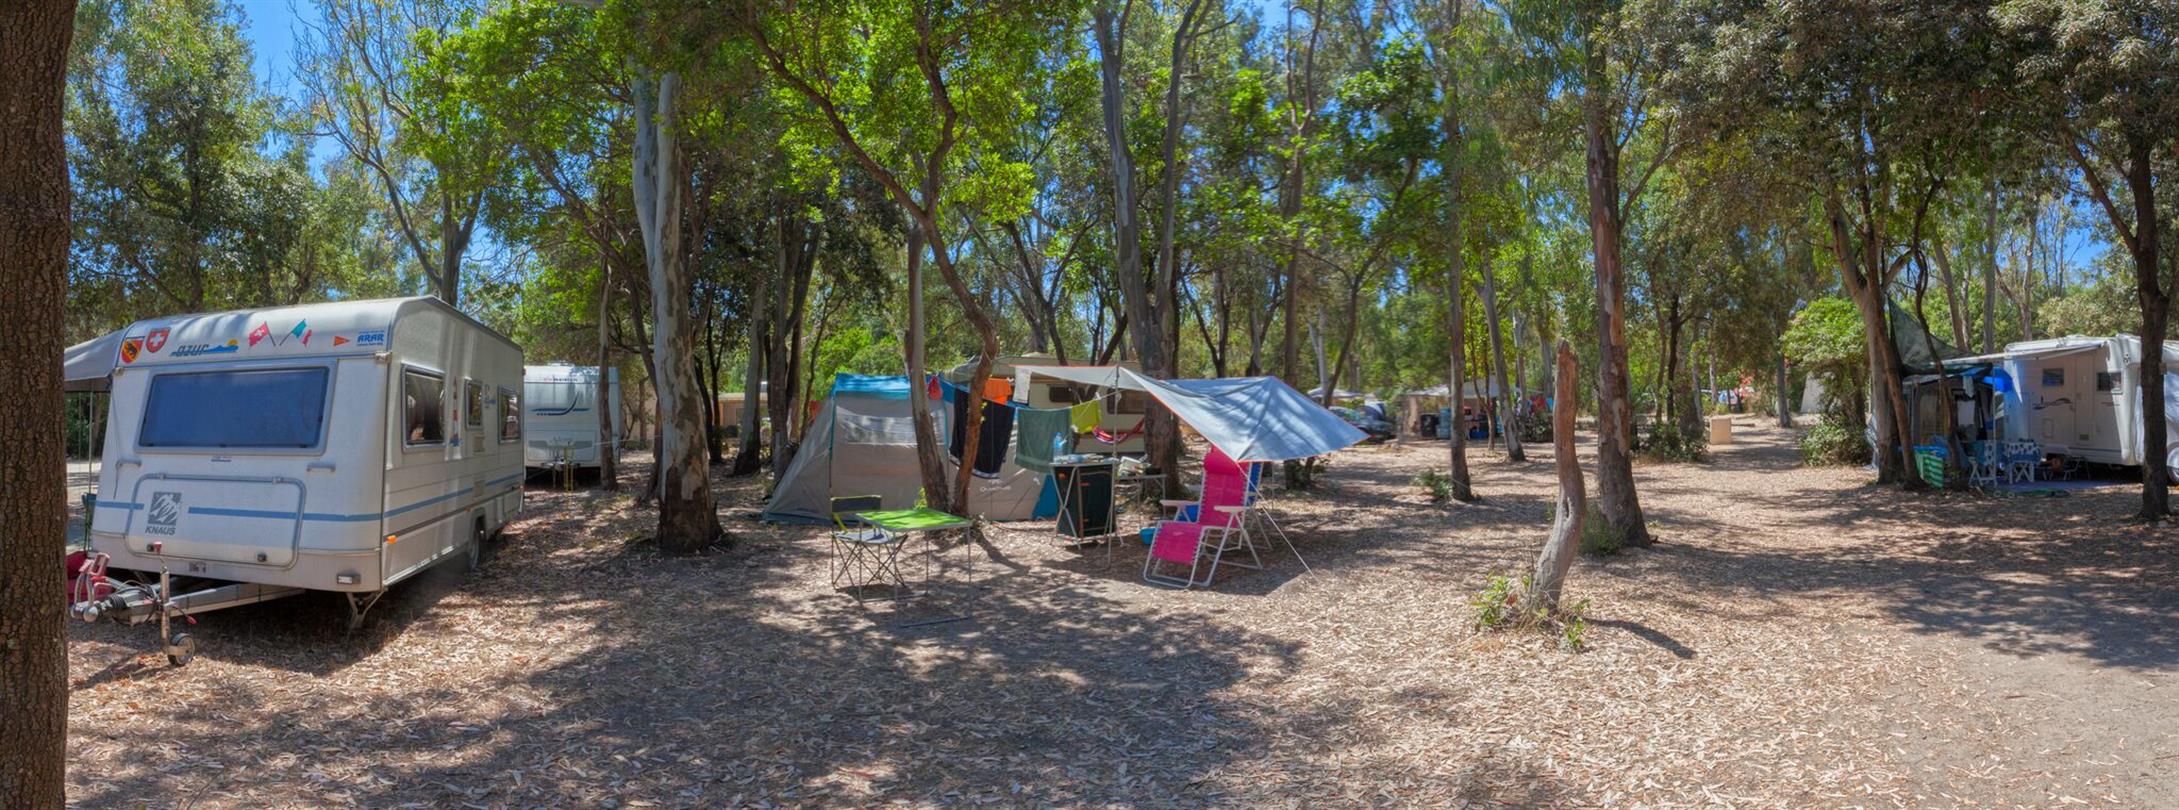 Emplacements camping bord de mer naturiste 4 Etoiles Corse, Linguizzetta - Domaine de Bagheera